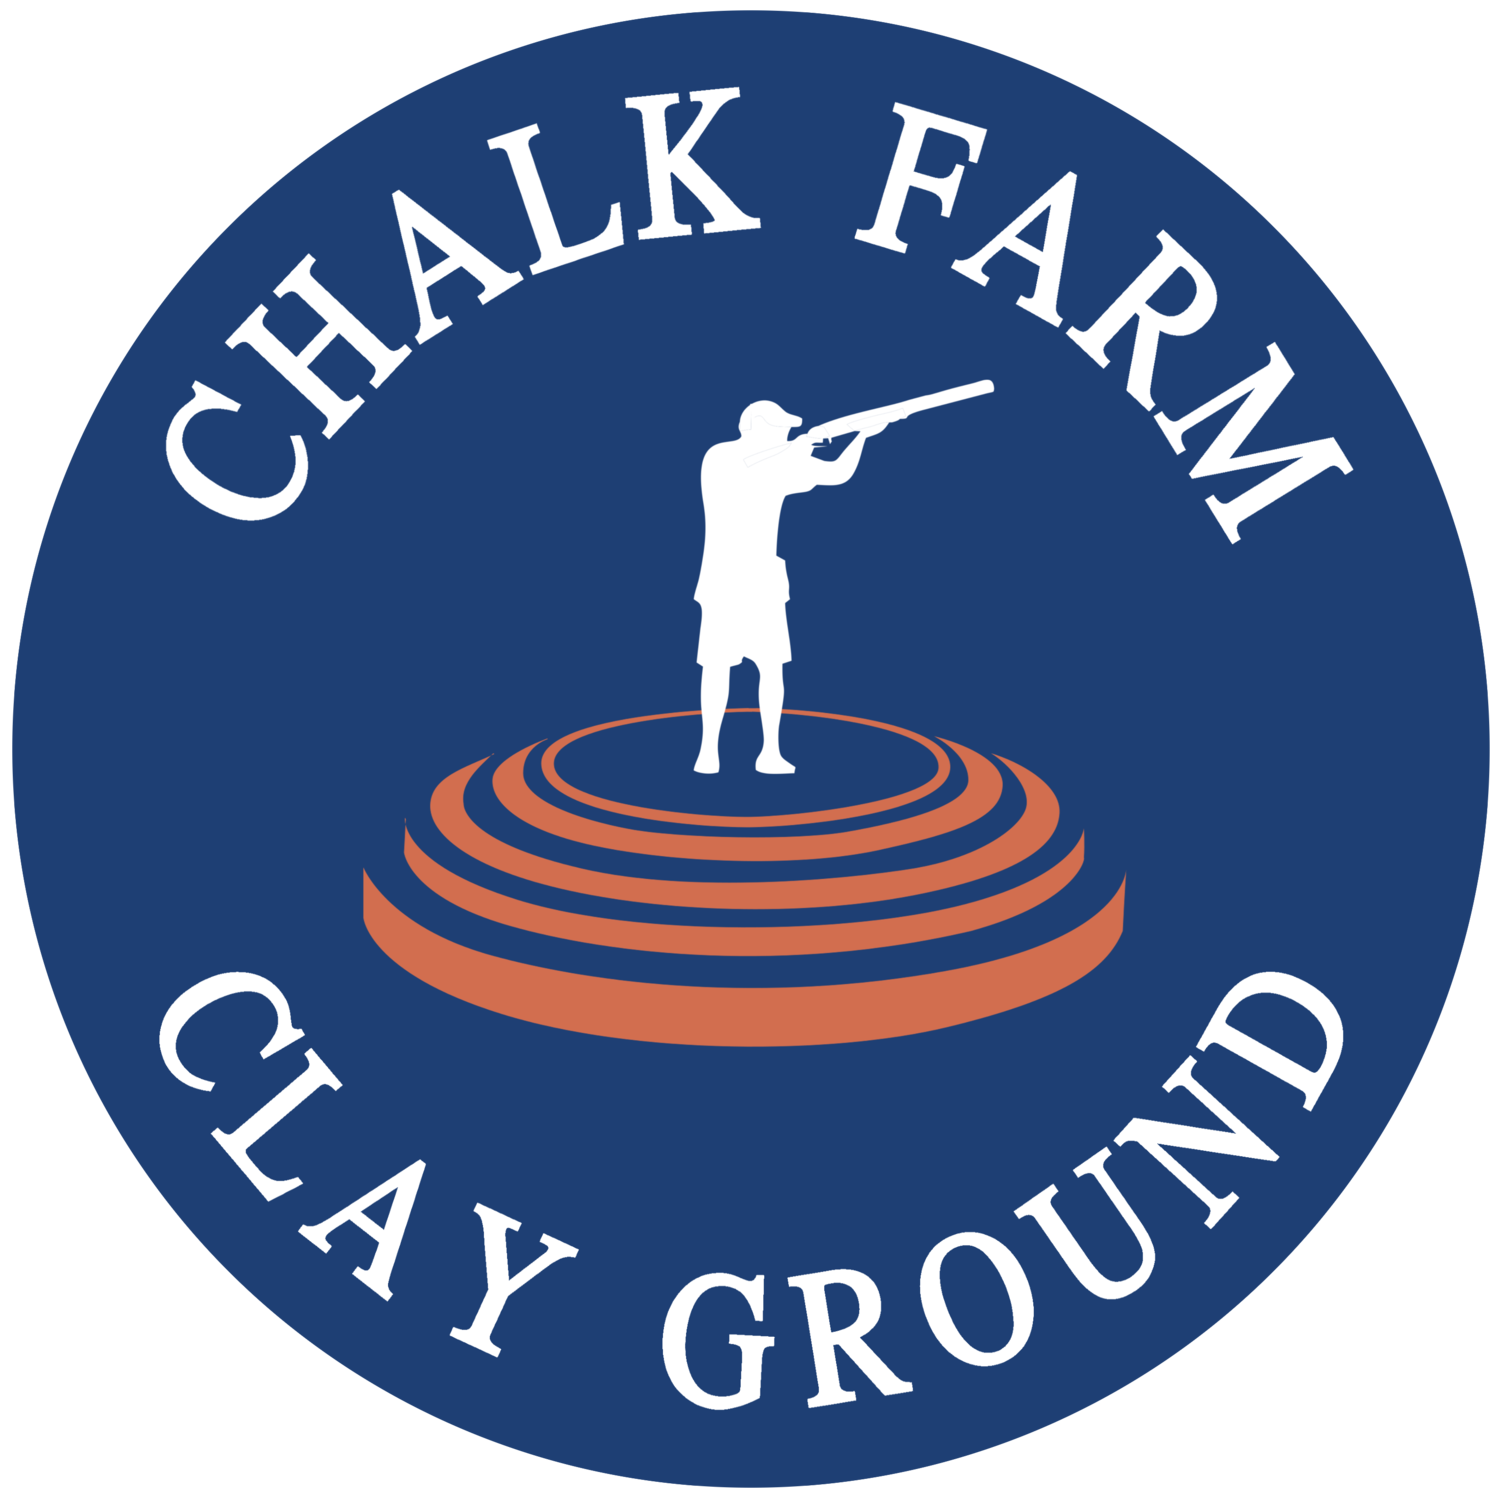 Chalk Farm Clay Ground near Kings Lynn, Norfolk